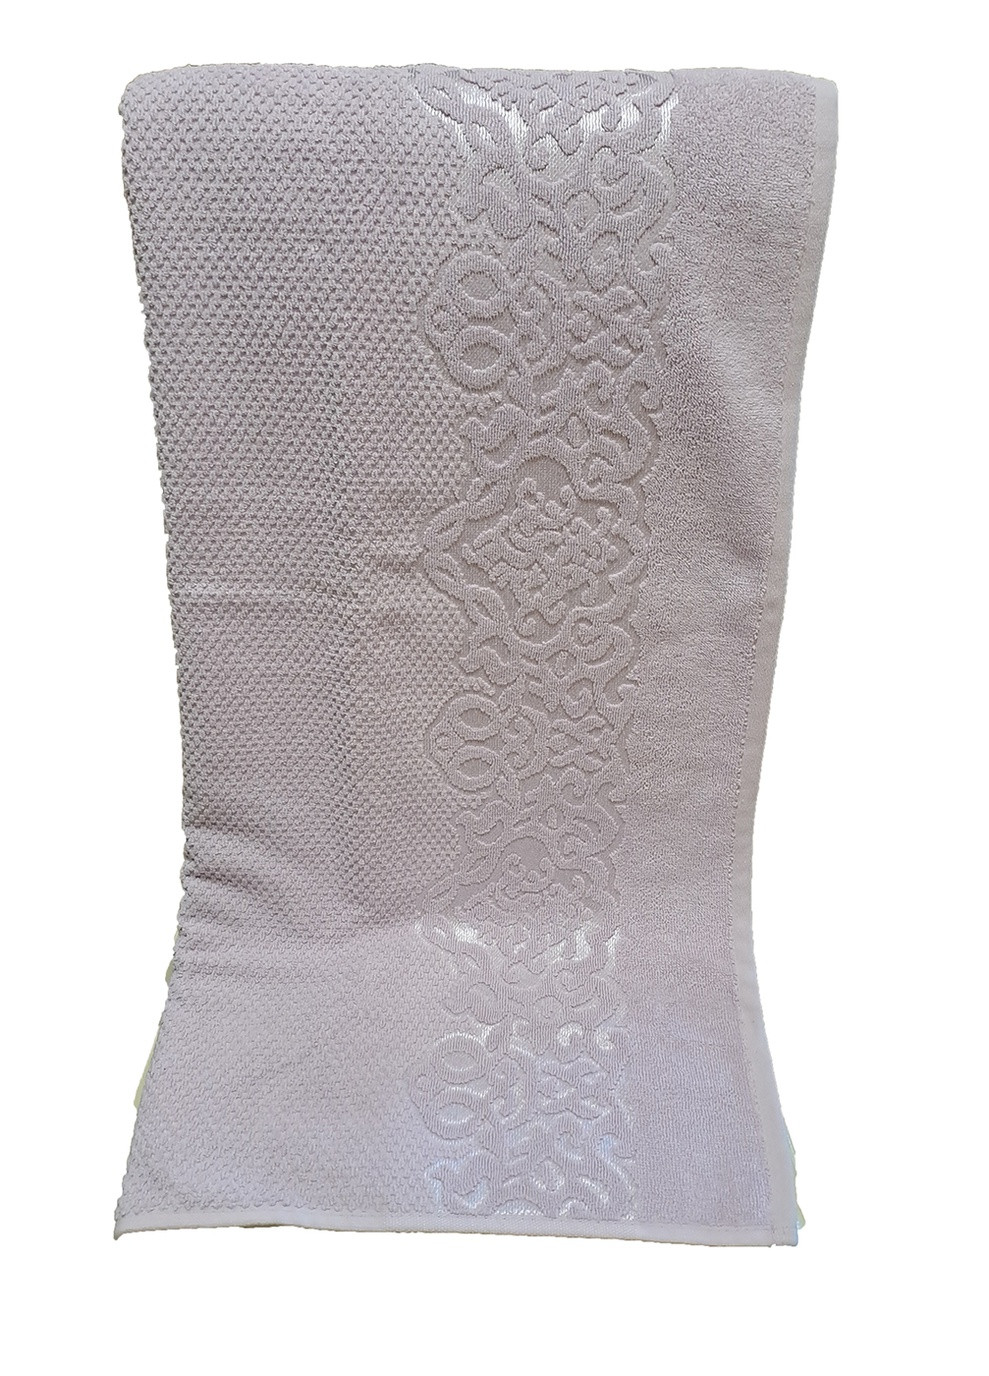 AHFA полотенце для сауны 90х145см однотонный сиреневый производство - Турция